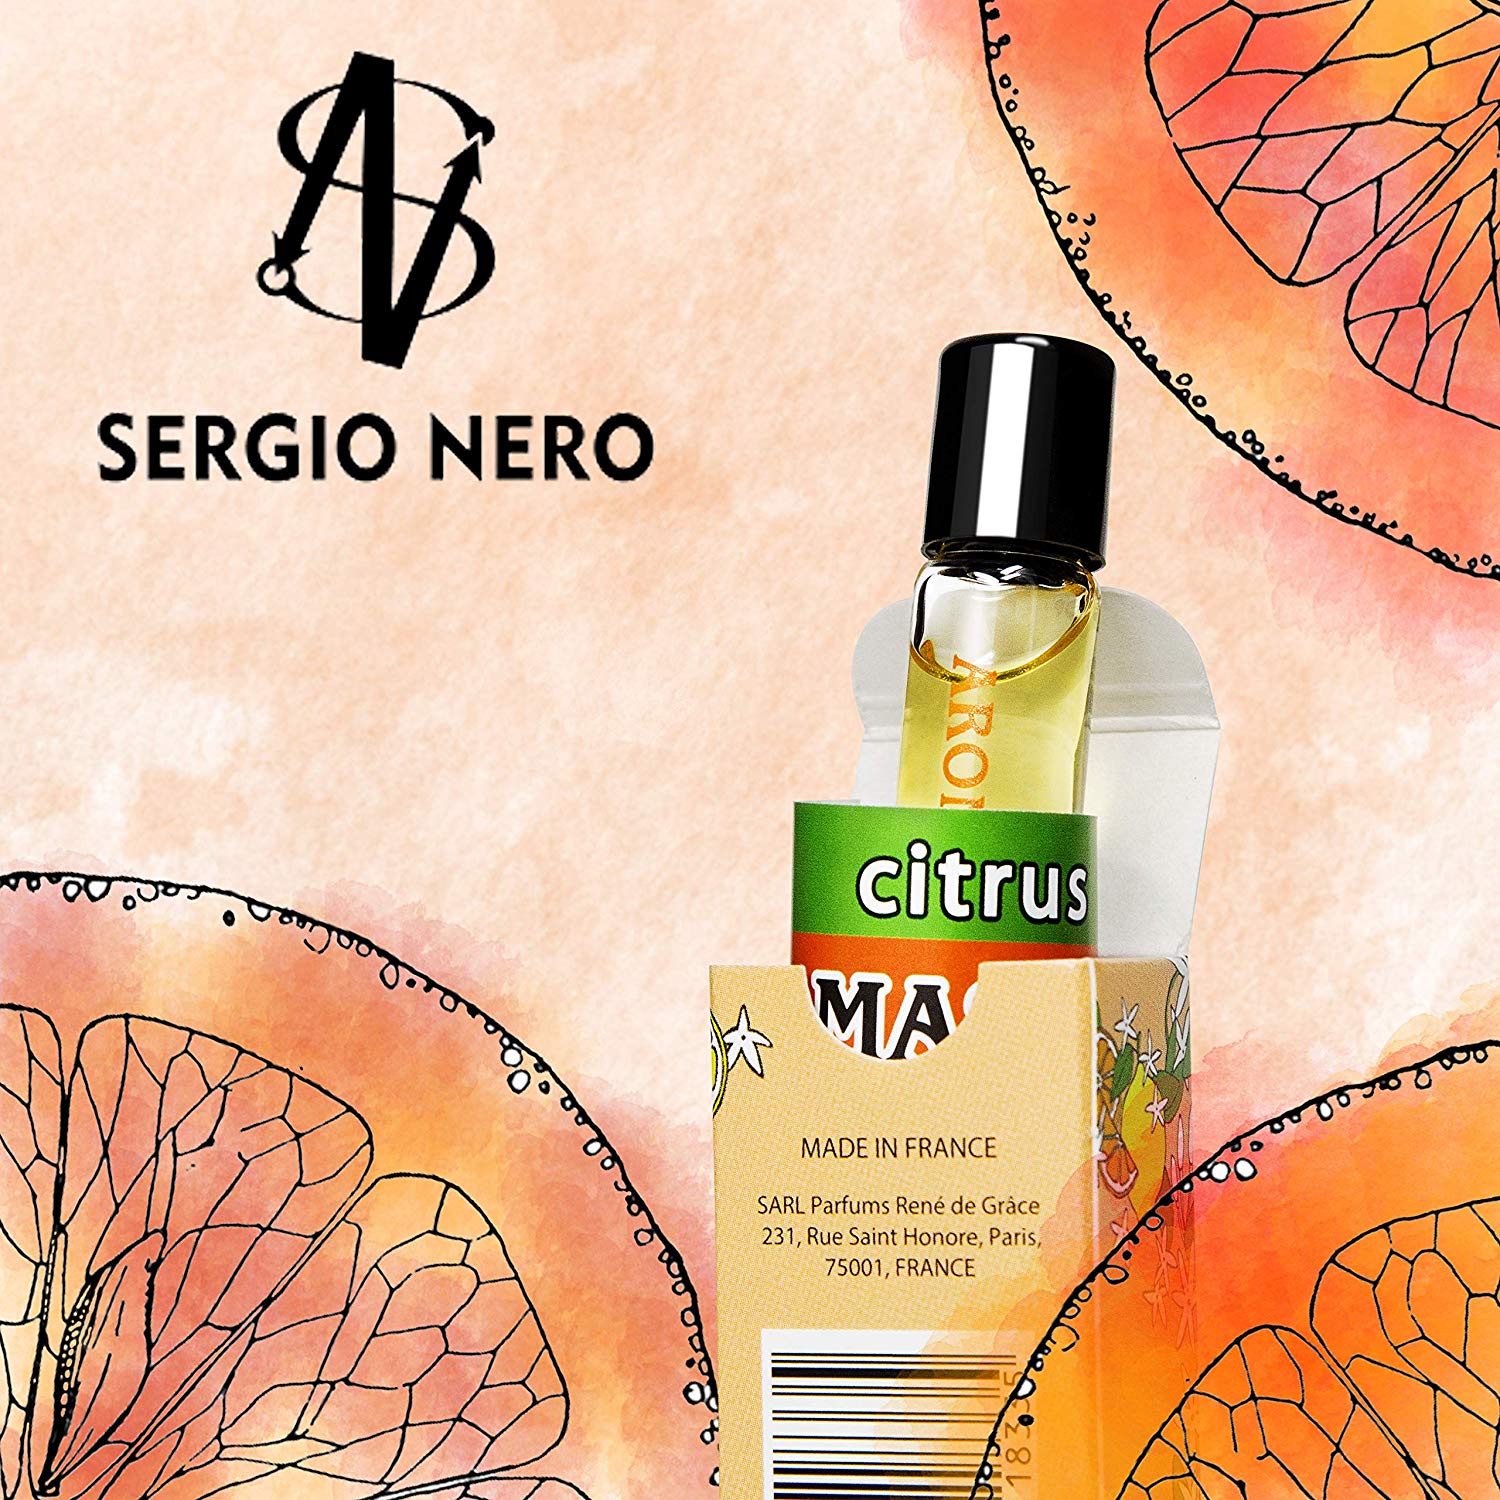 фото Масло парфюмерное Sergio Nero Aromasecret Citrus (parfume oil) 5ml 5 мл